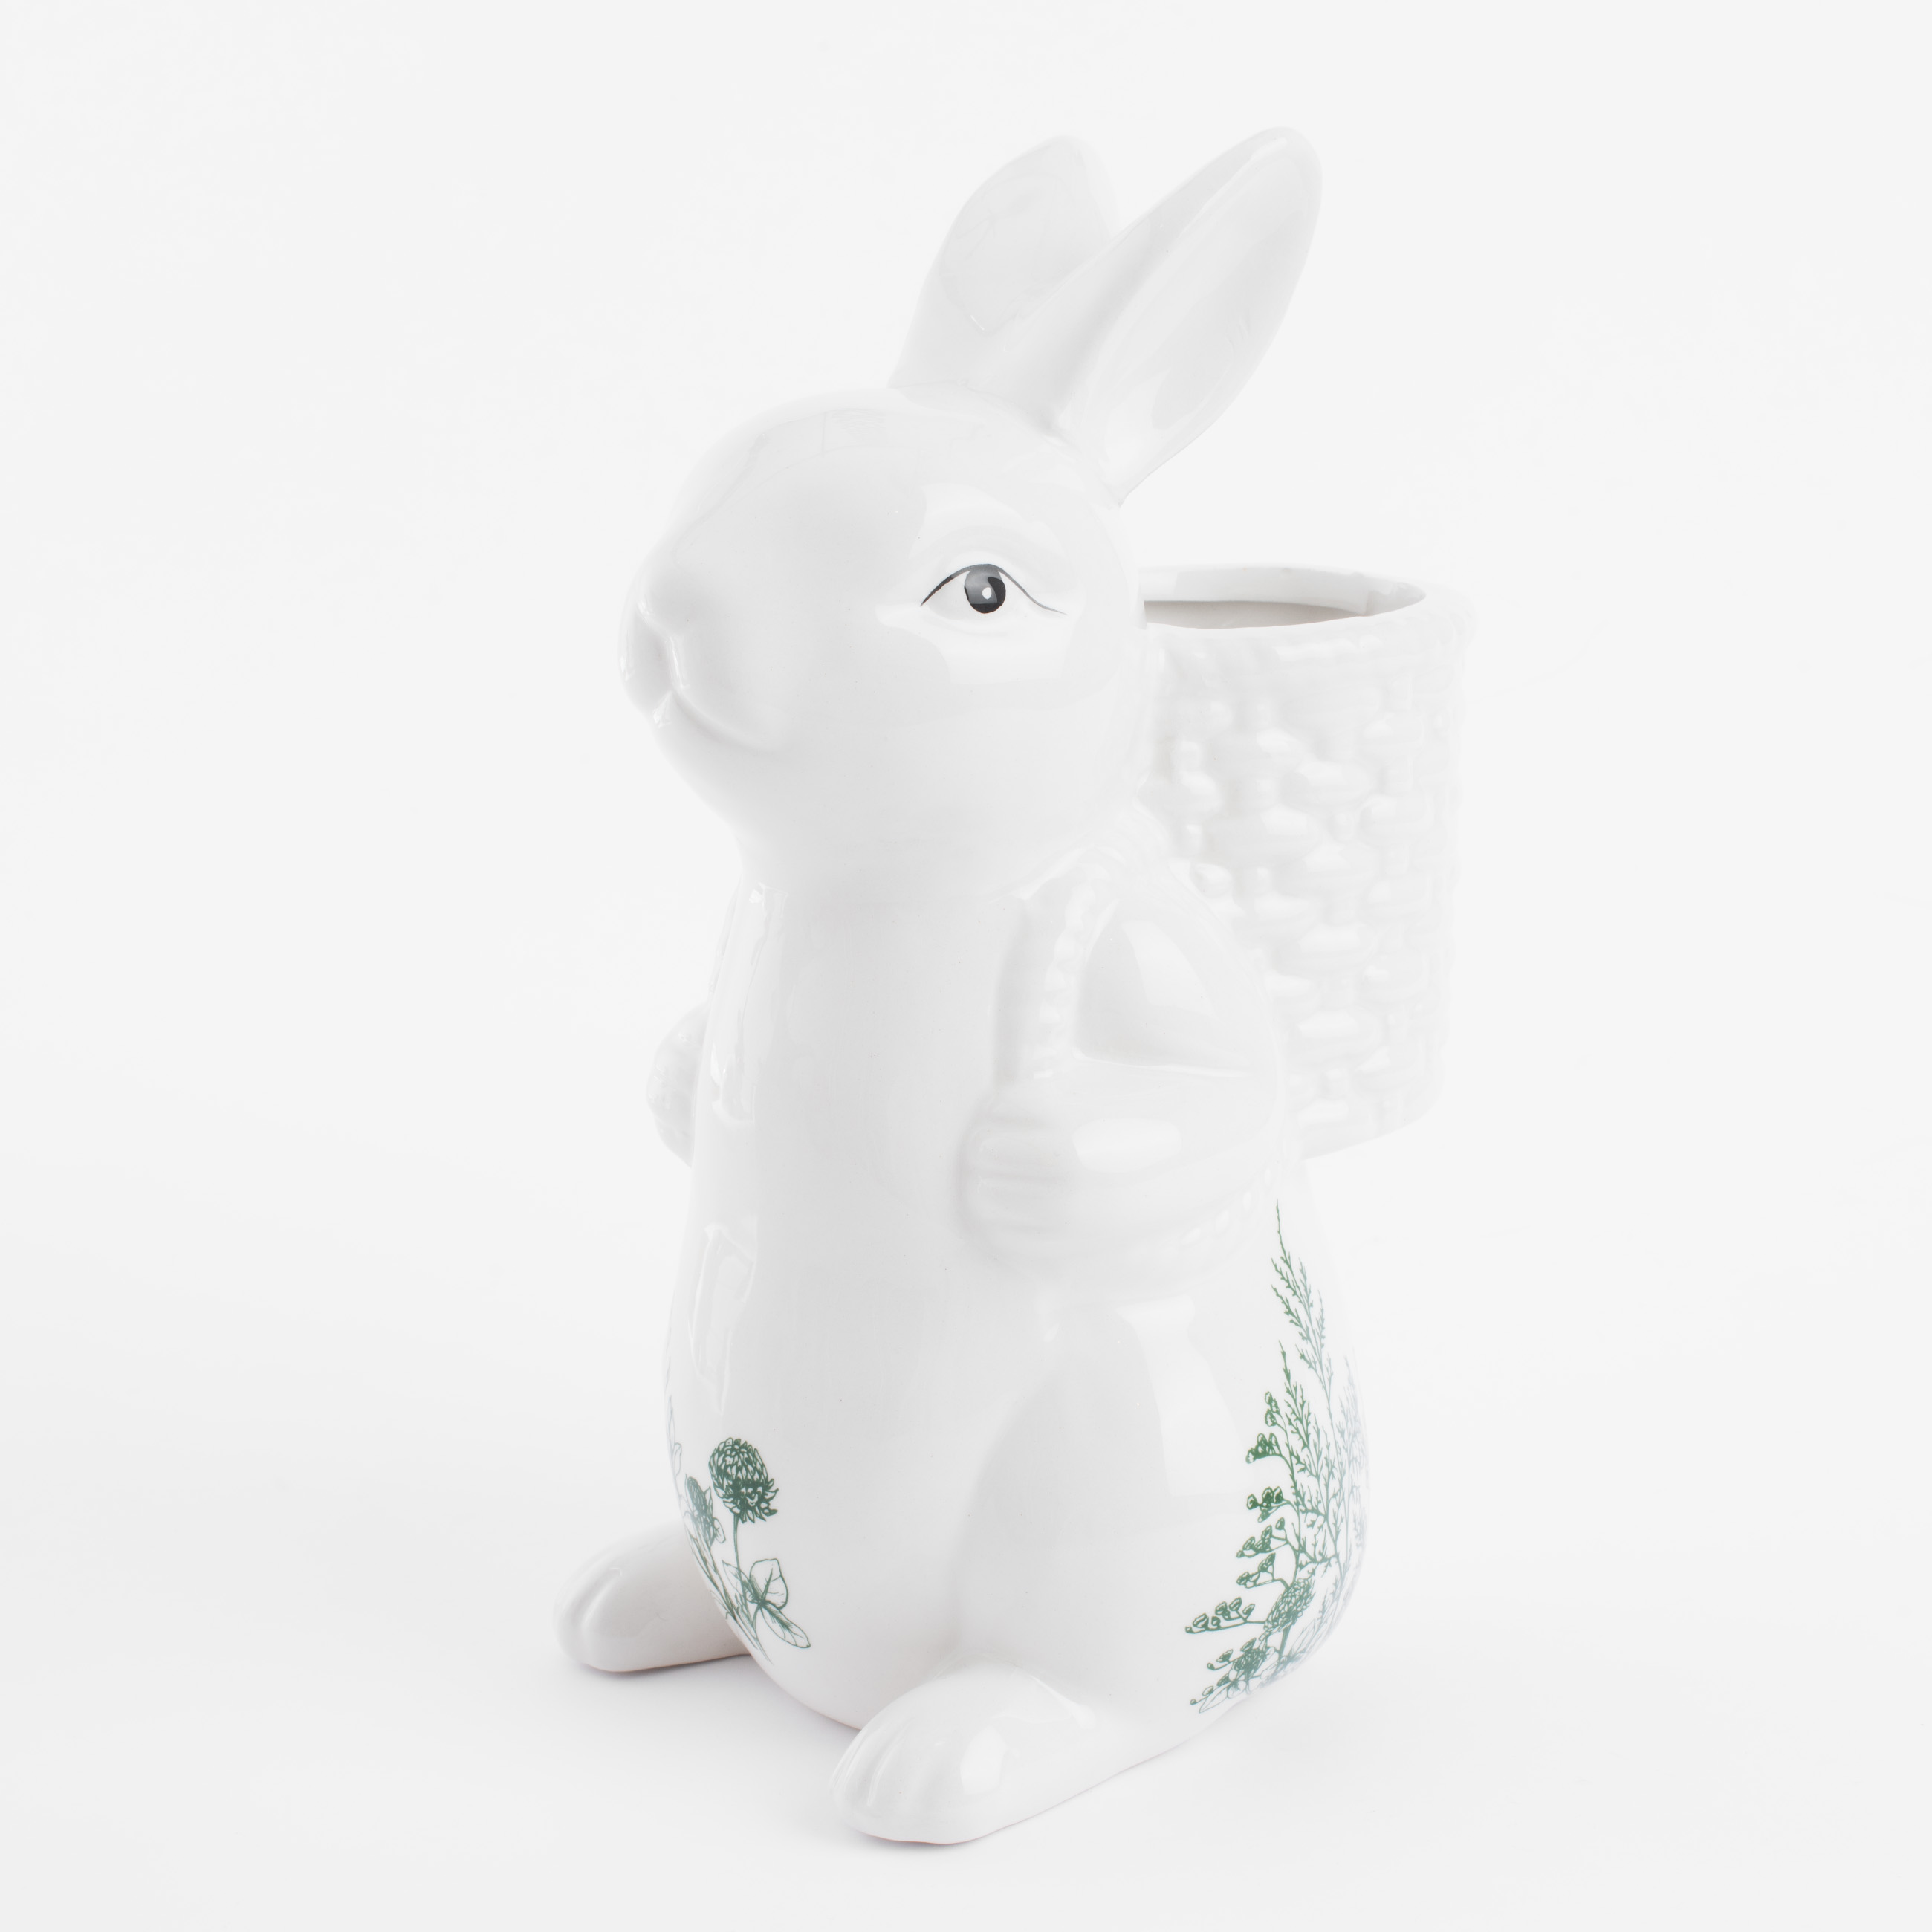 Ваза для цветов, 22 см, декоративная, керамика, бело-зеленая, Кролик с корзиной, Easter blooming изображение № 2